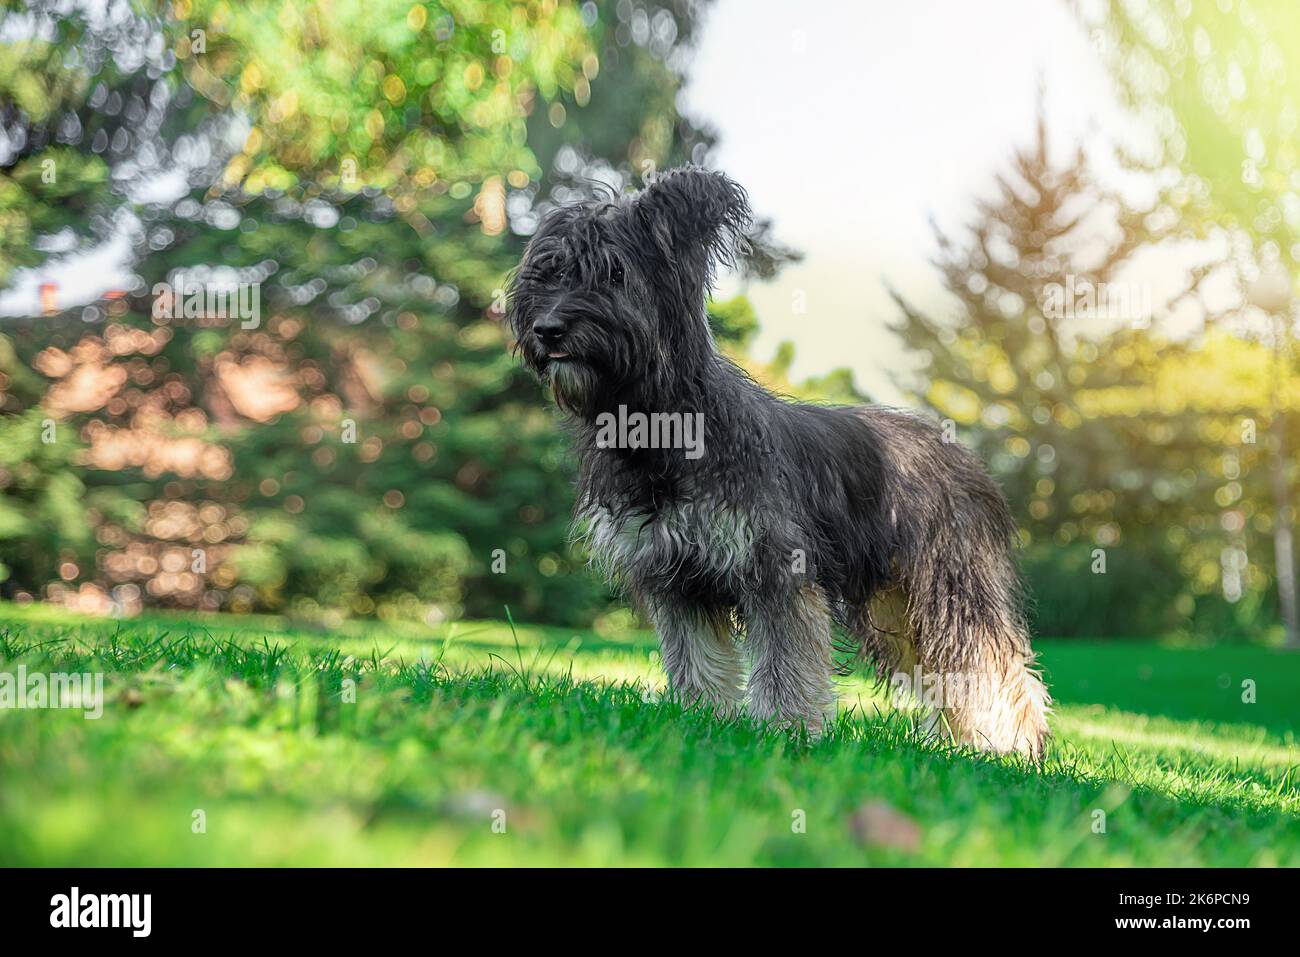 Immagine di un cane pastore catalano in piedi in una zona giardino. Cani pedigree. Amore per gli animali e gli animali domestici Foto Stock